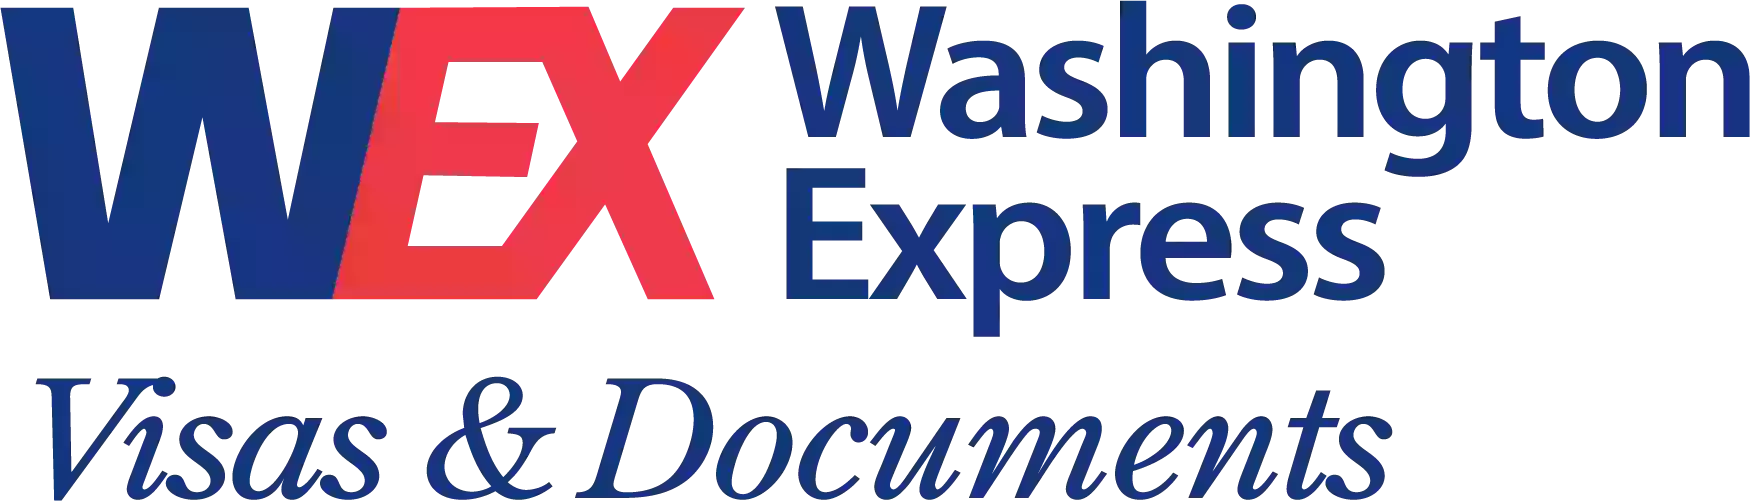 Washington Express Visas & Documents